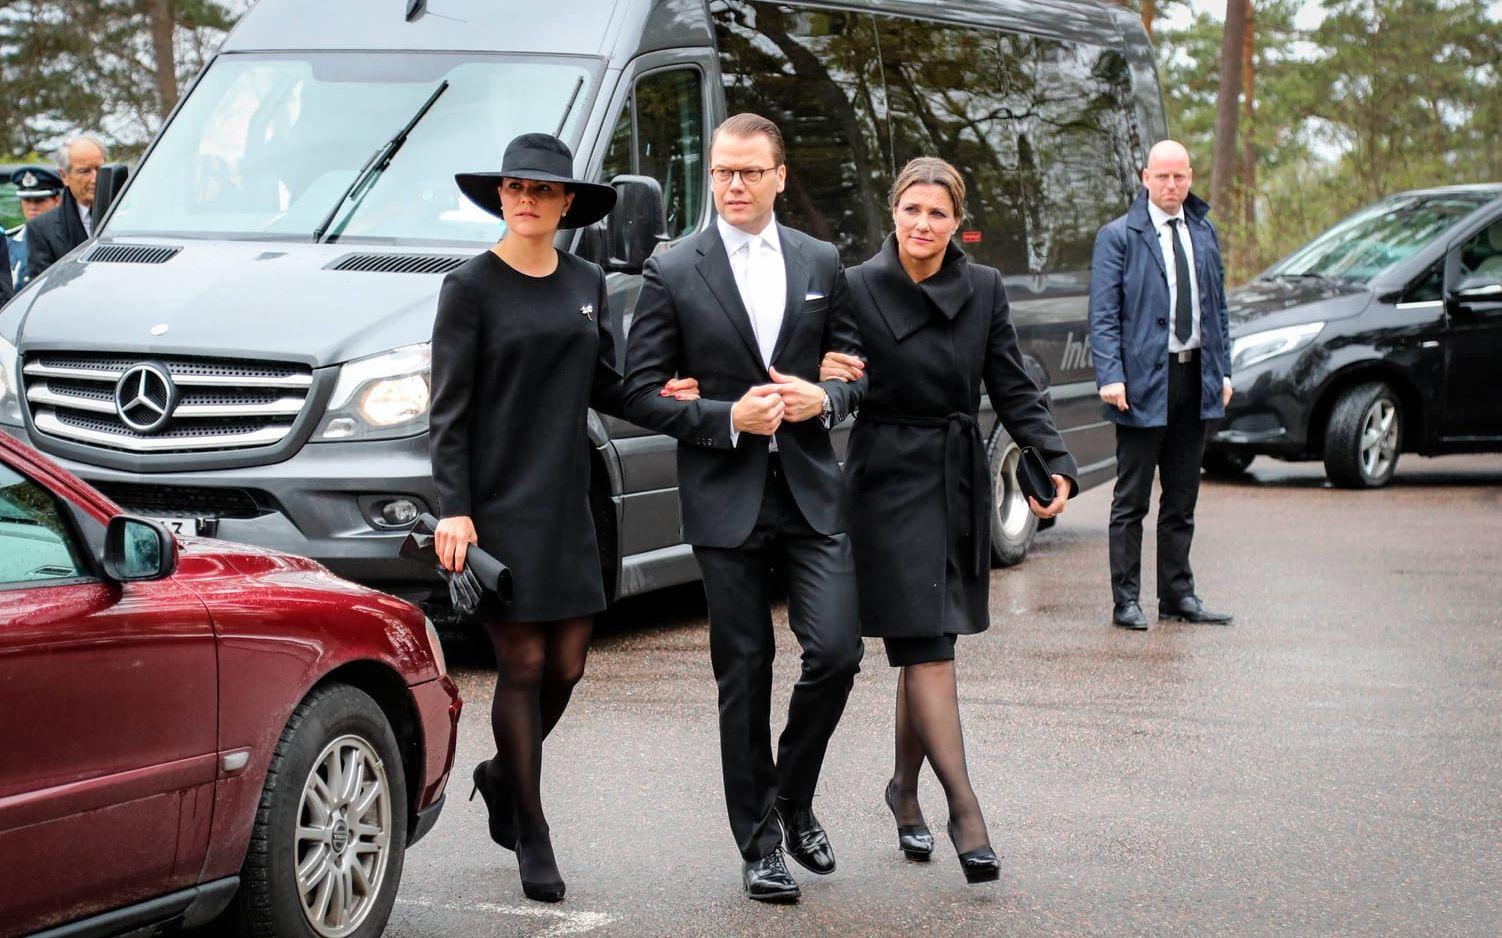 Kungafamiljen anlände till begravningen från Oslo där de närvat vid firandet av det norska kungaparets 80-årsdagar. Bild: TT